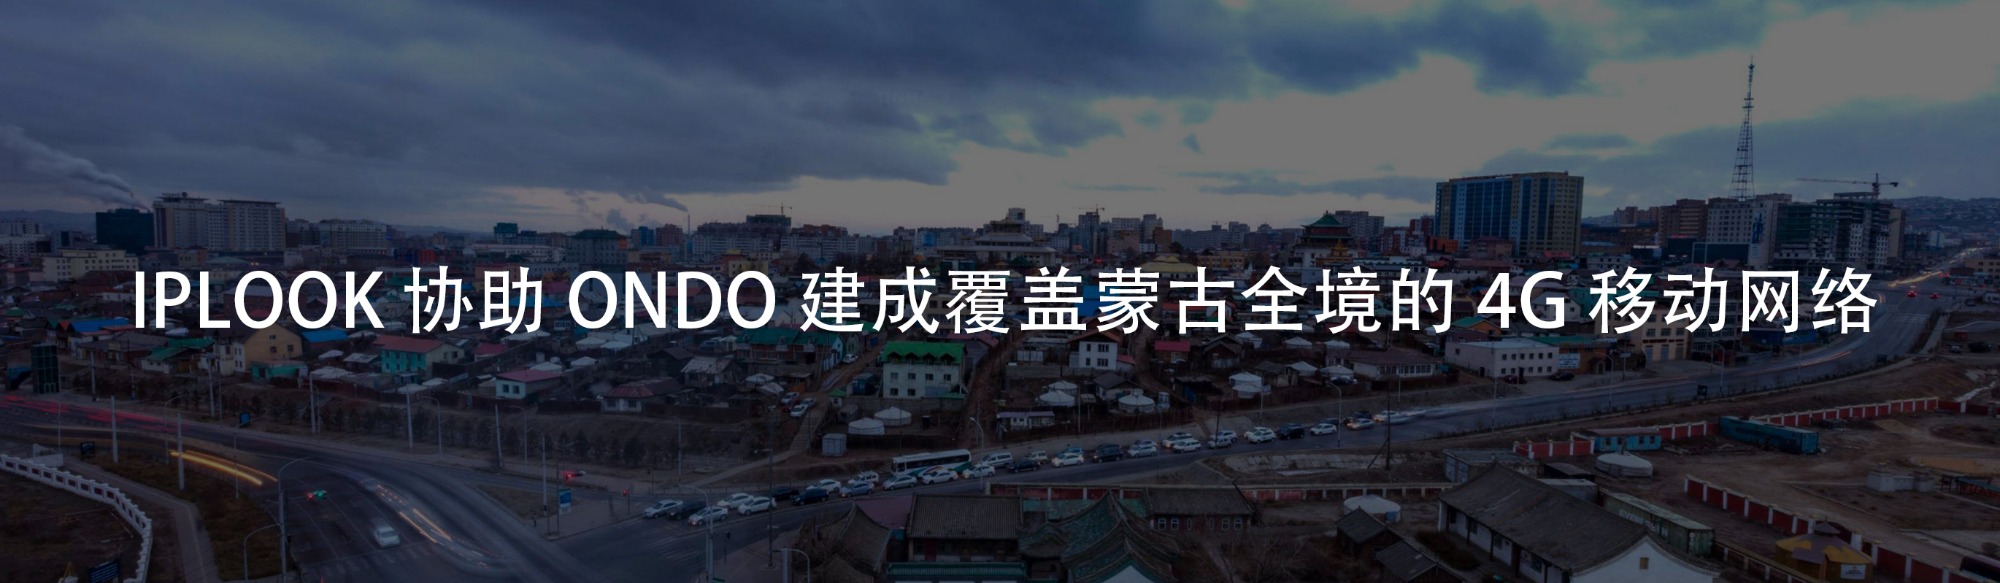 IPLOOK协助ONDO在蒙古部署4G移动商用网络